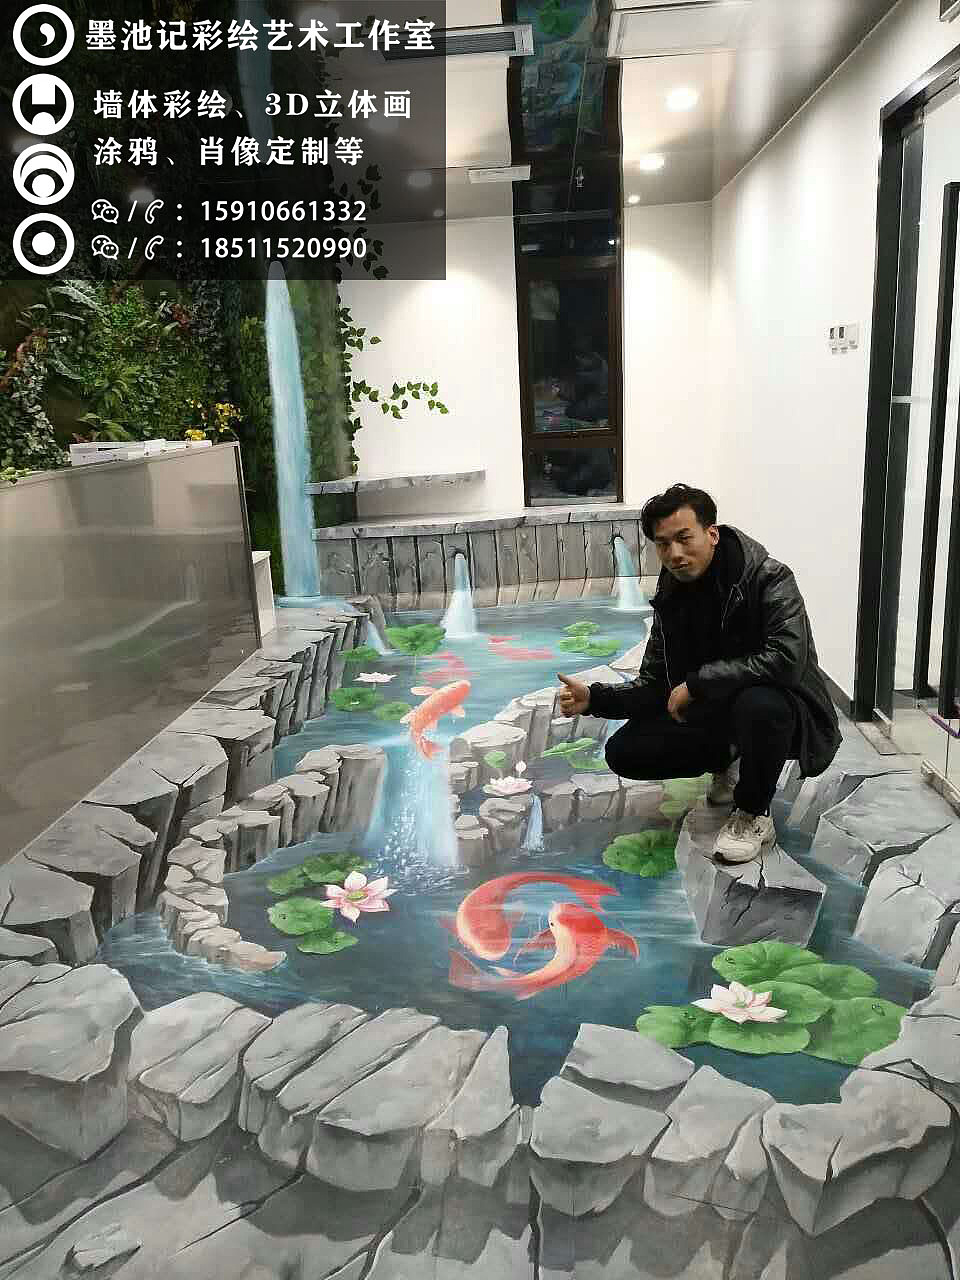 为北京红鲤鱼院线绘制设计的3d地面立体画《池塘》